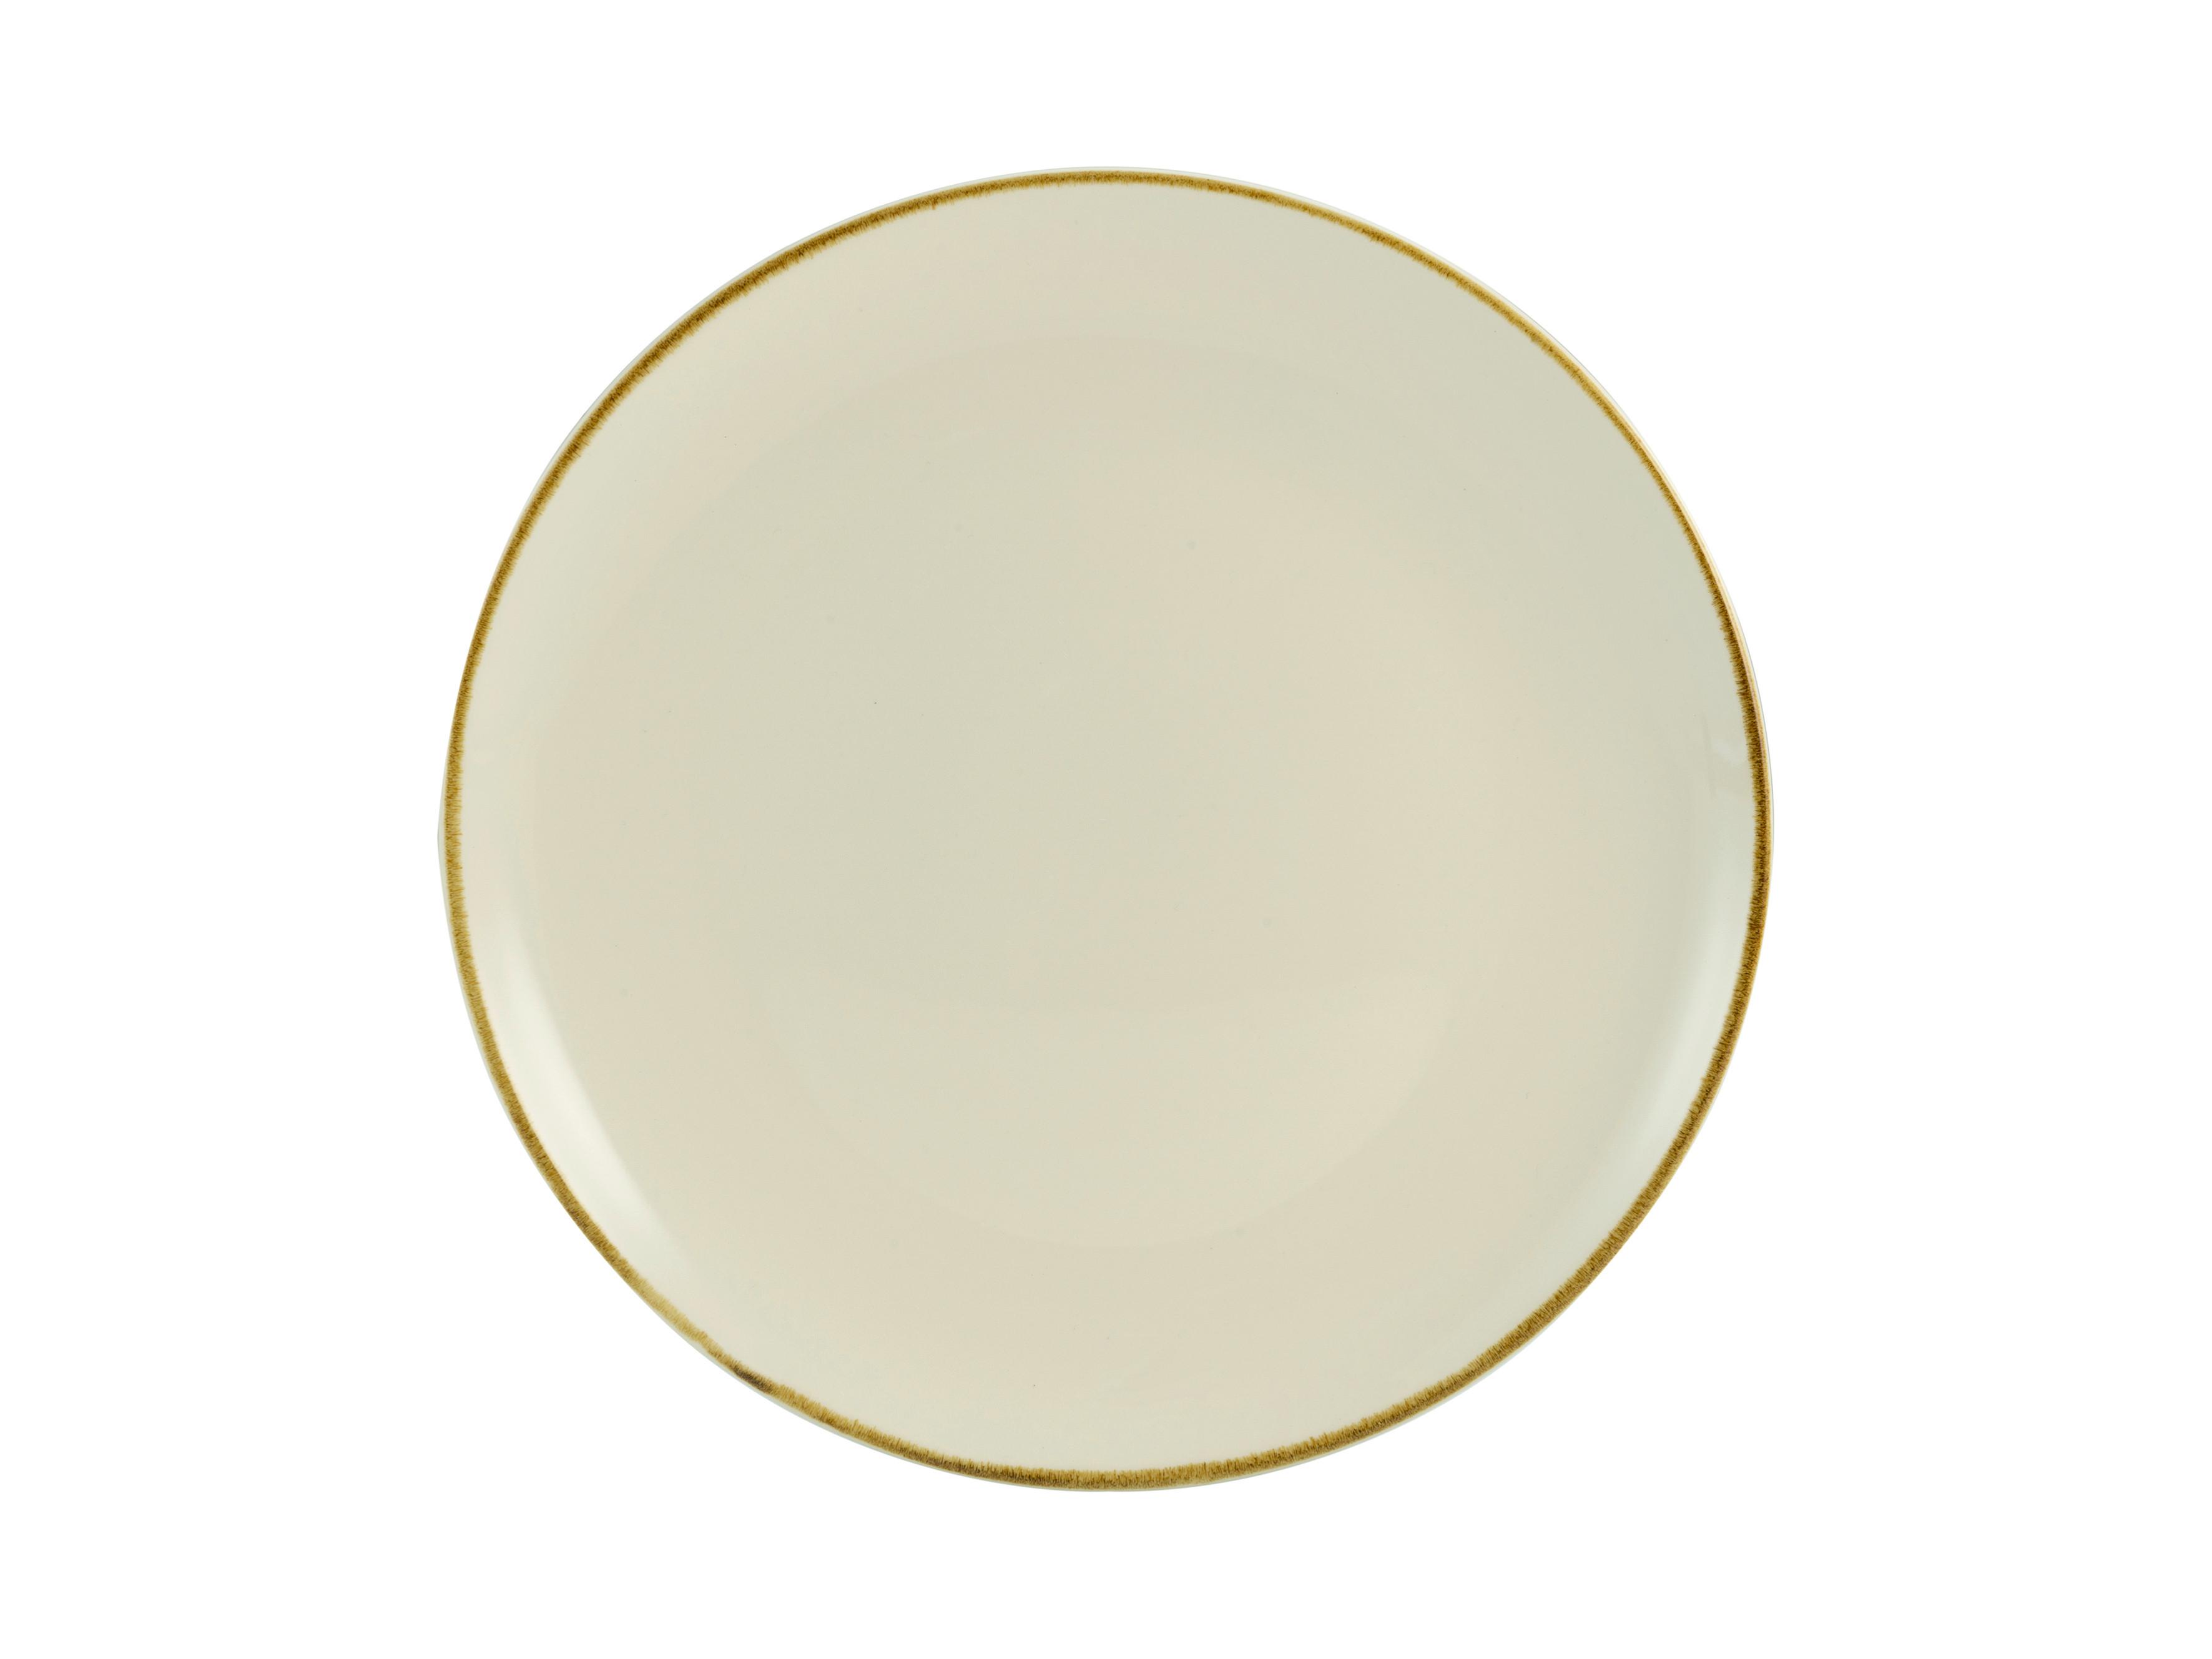 Dessertteller Linen aus Steinzeug Ø ca. 22cm - Creme/Weiß, Keramik (22/22/2,5cm) - Premium Living